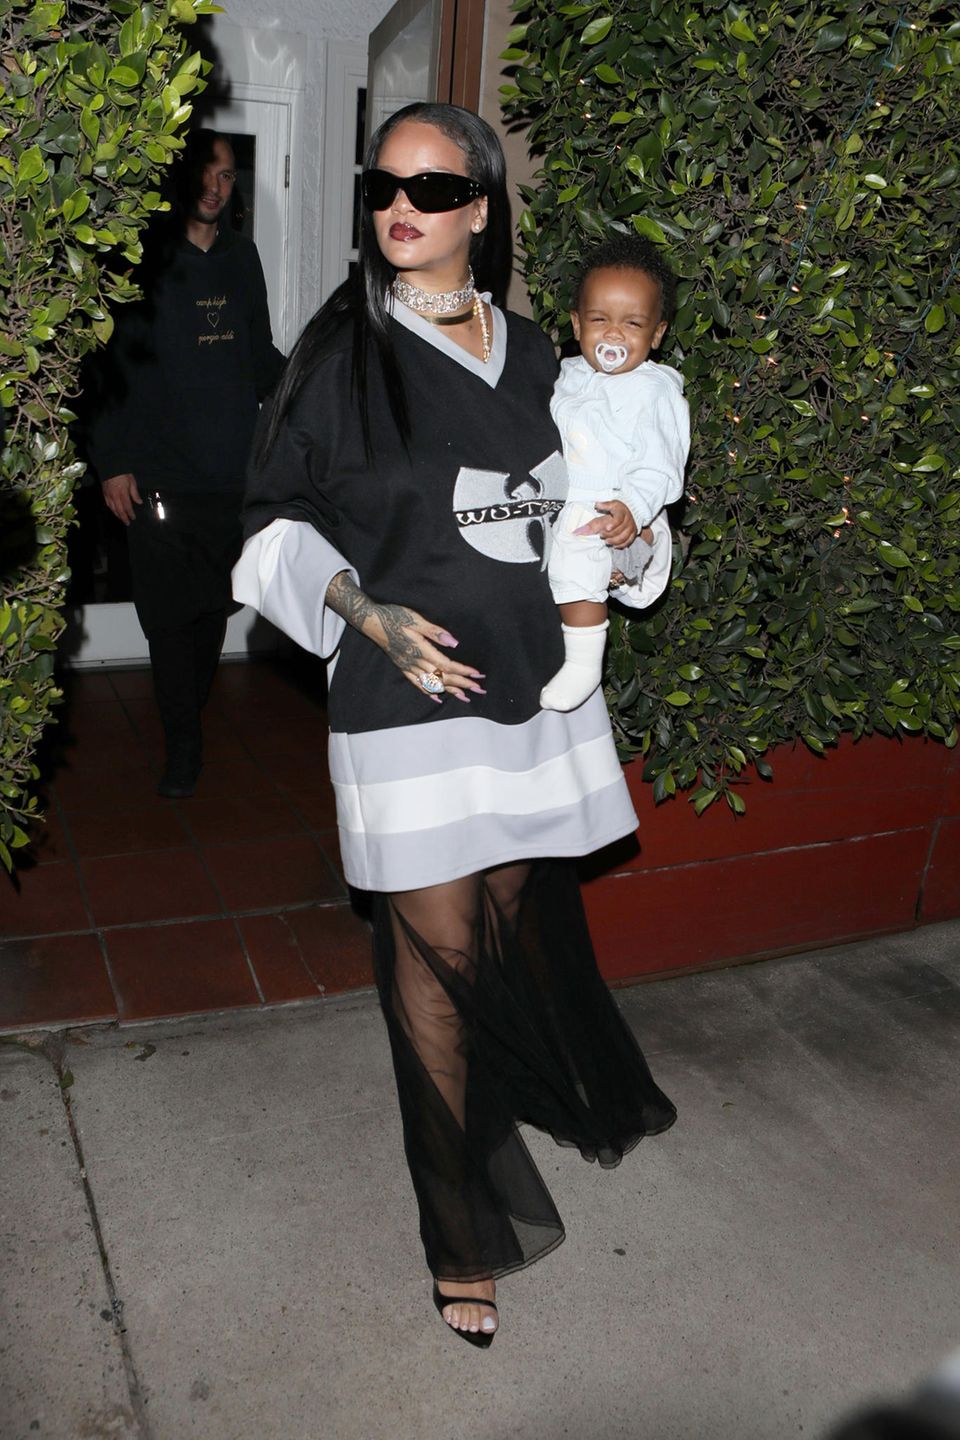 Wo Rihanna ist, ist Blitzlichtgewitter sicher! Beim Abendessen mit ihrem Sohn zeigt sich die Sängerin im oversized Wu-Tang-Jersey und fetter Diamantkette. XL-Sonnenbrille und ein transparenter Rock runden den Look ab und beweisen, dass Rihanna auch in ihrer zweiten Schwangerschaft modisch Vollgas gibt.